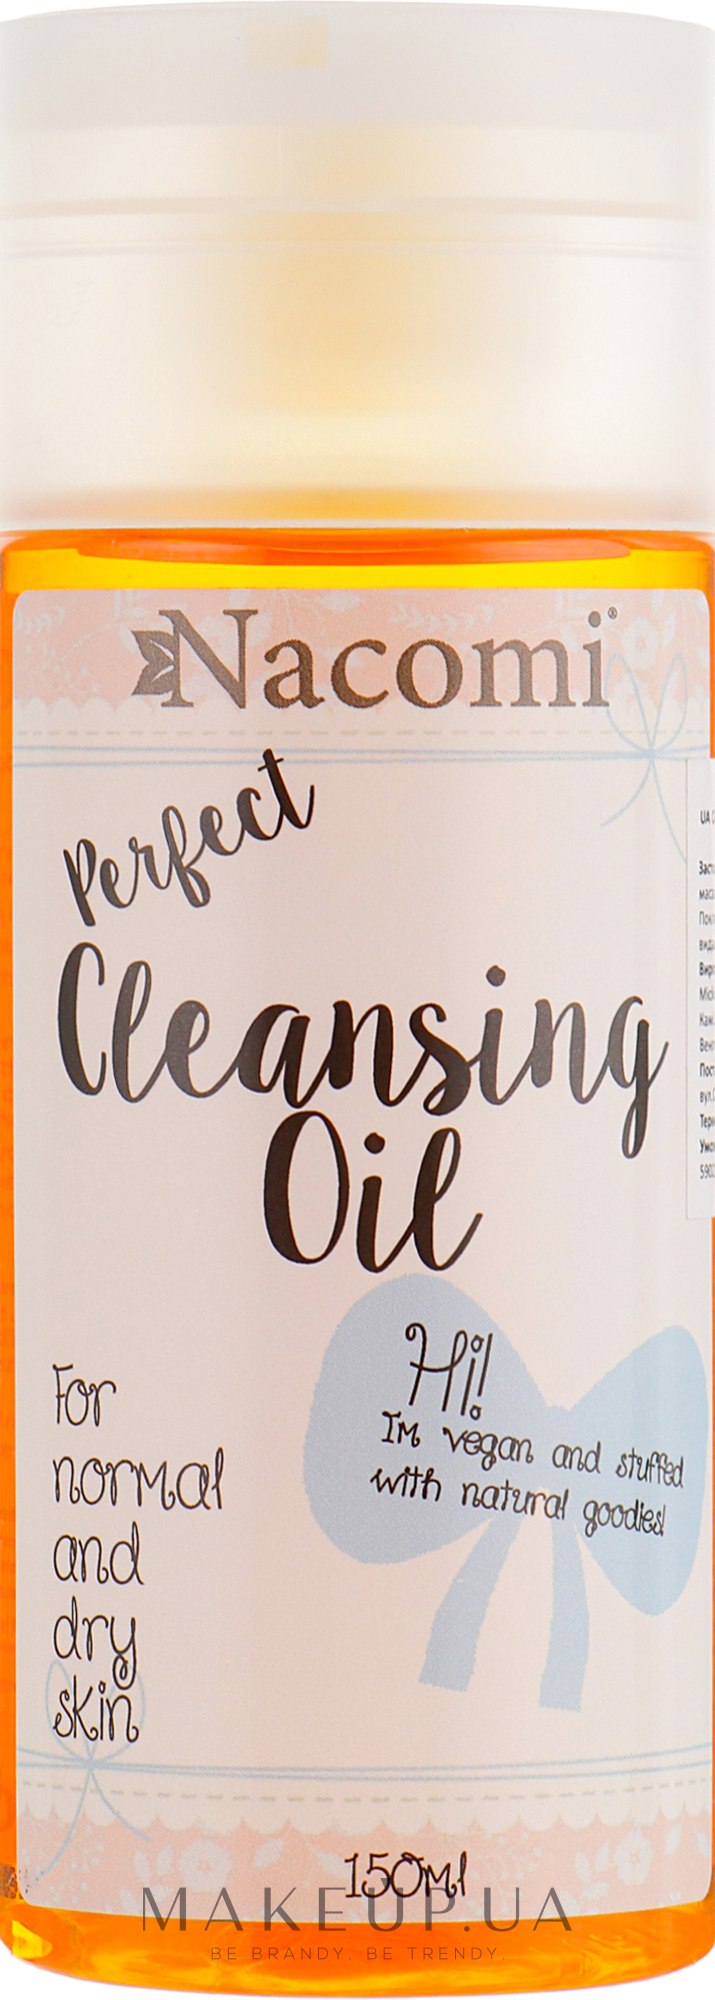 Олія для зняття макіяжу, для нормальної та сухої шкіри - Nacomi Cleansing Oil Make Up Remover — фото 150ml